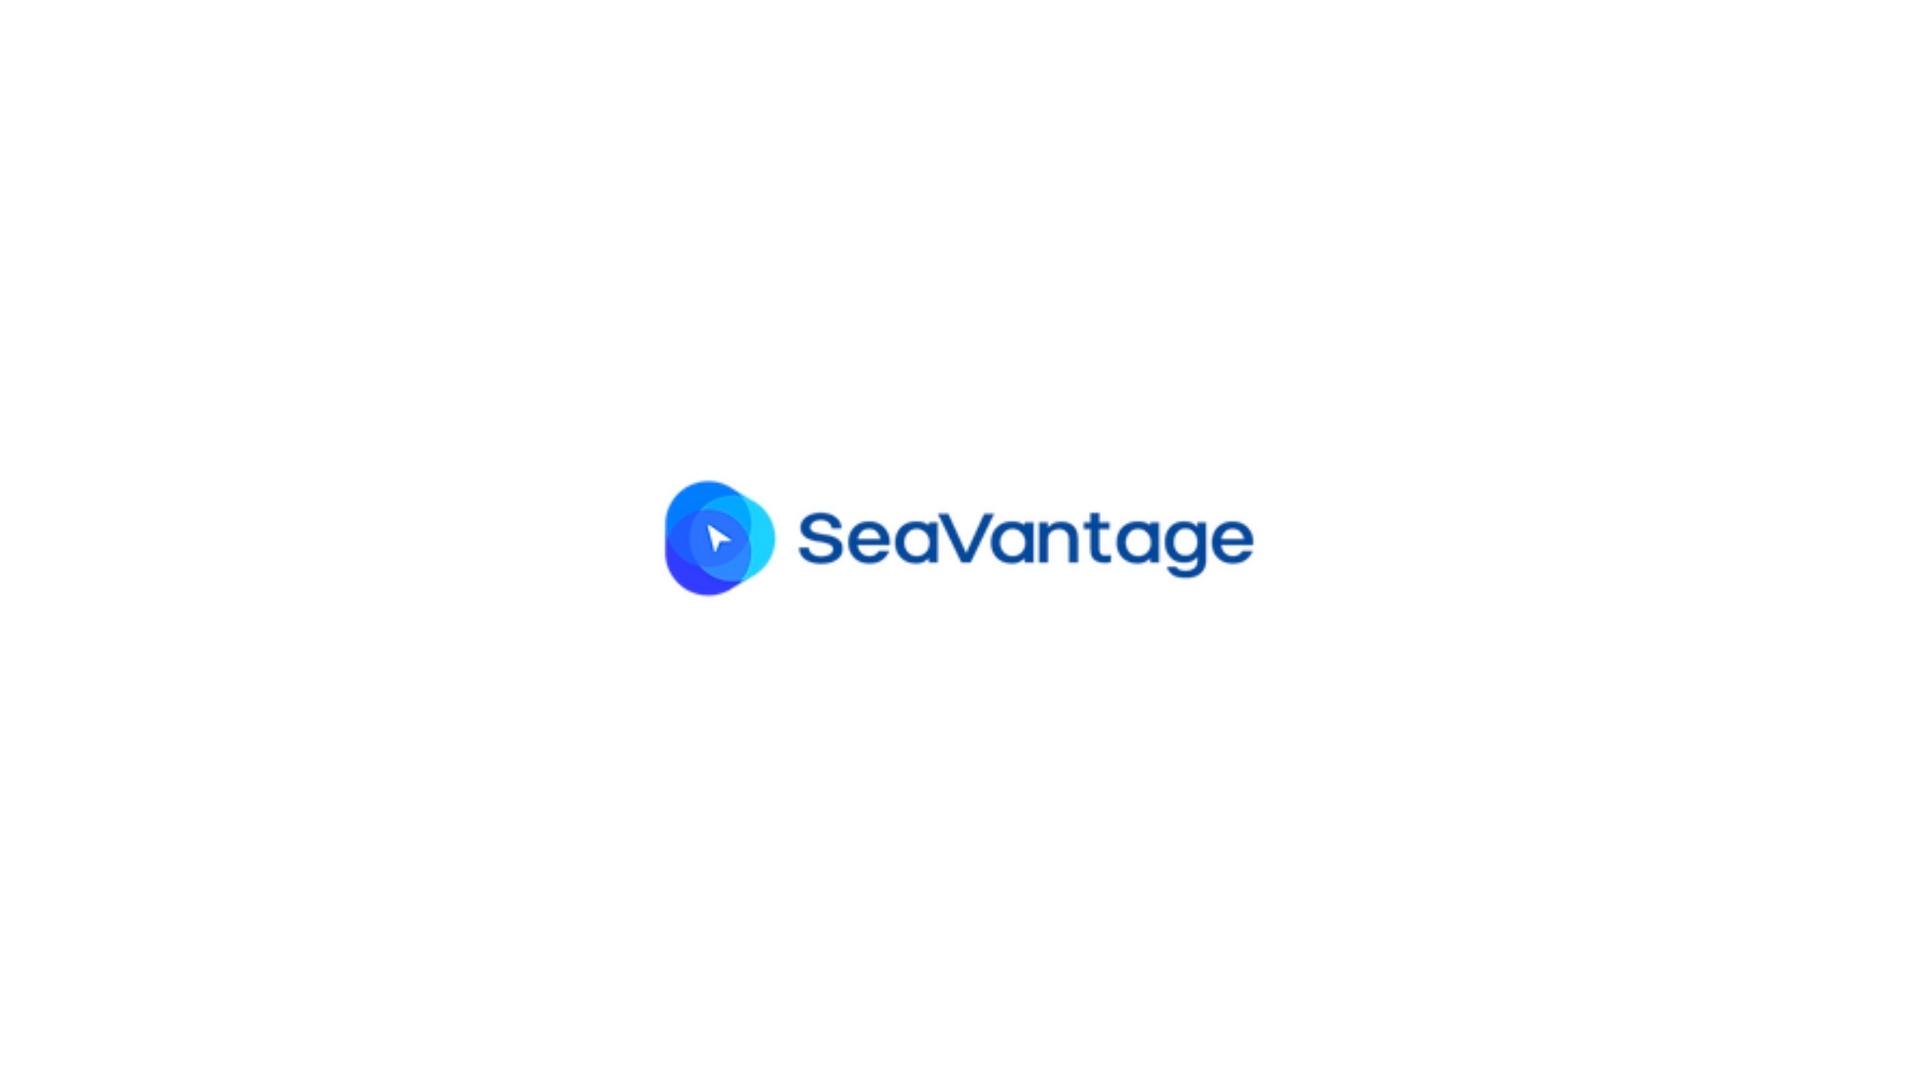 Seavantage